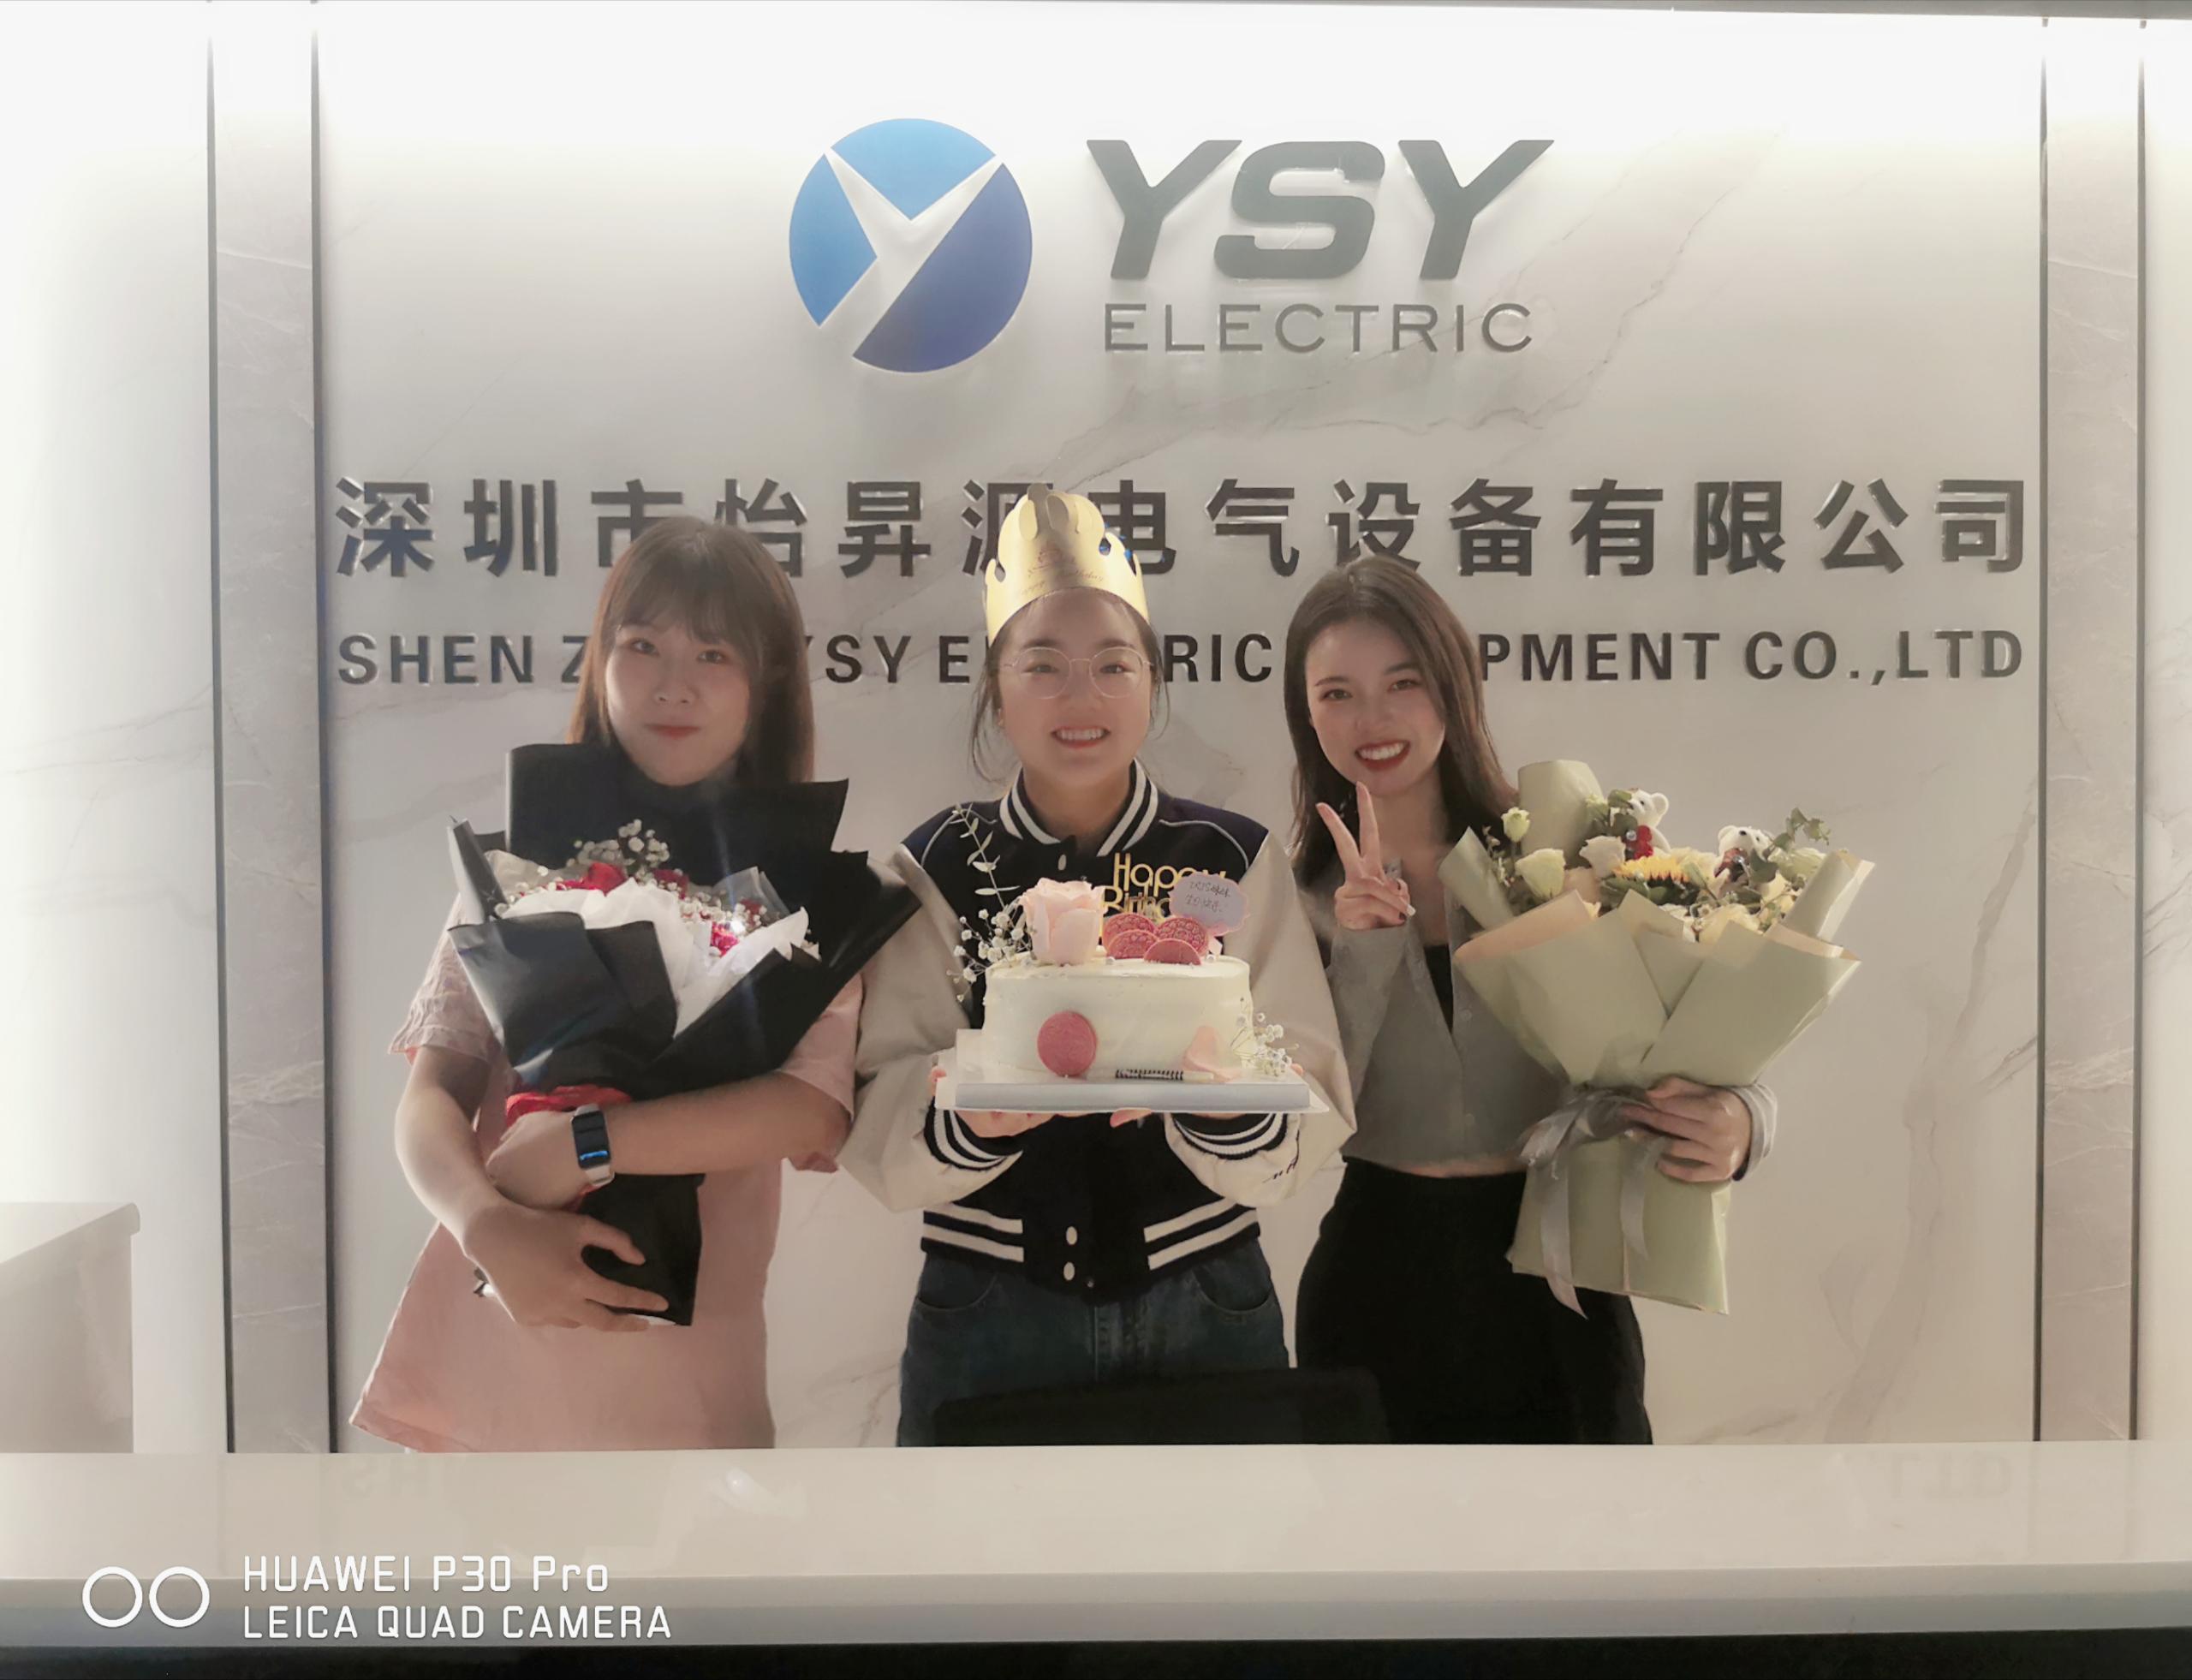 Felice anniversariu à 2 vendite di YSY Electric!